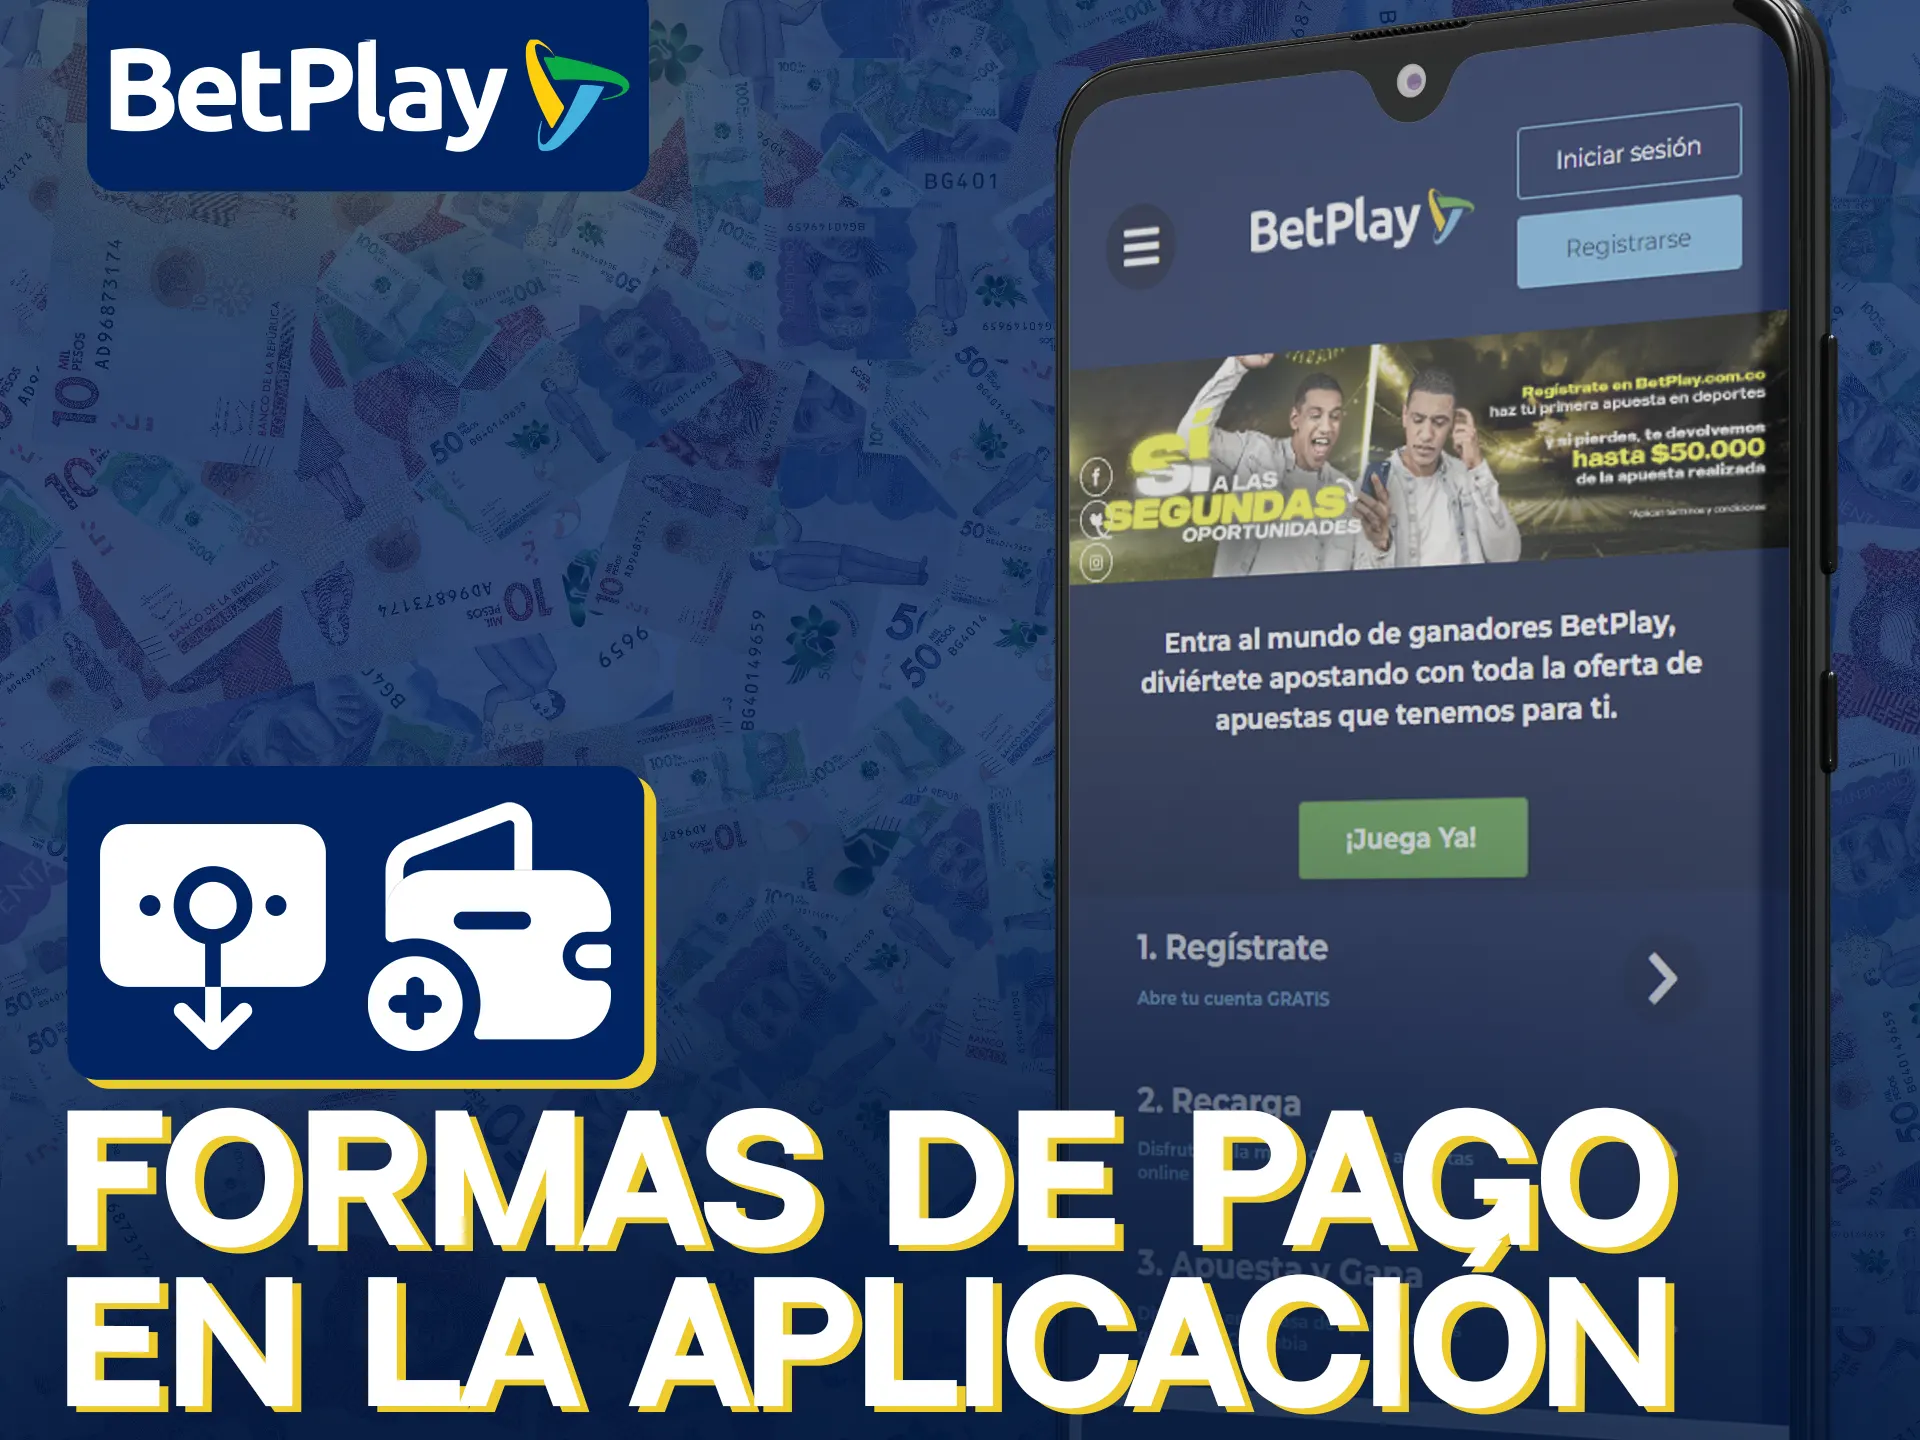 La app de BetPlay ofrece varios métodos de pago.